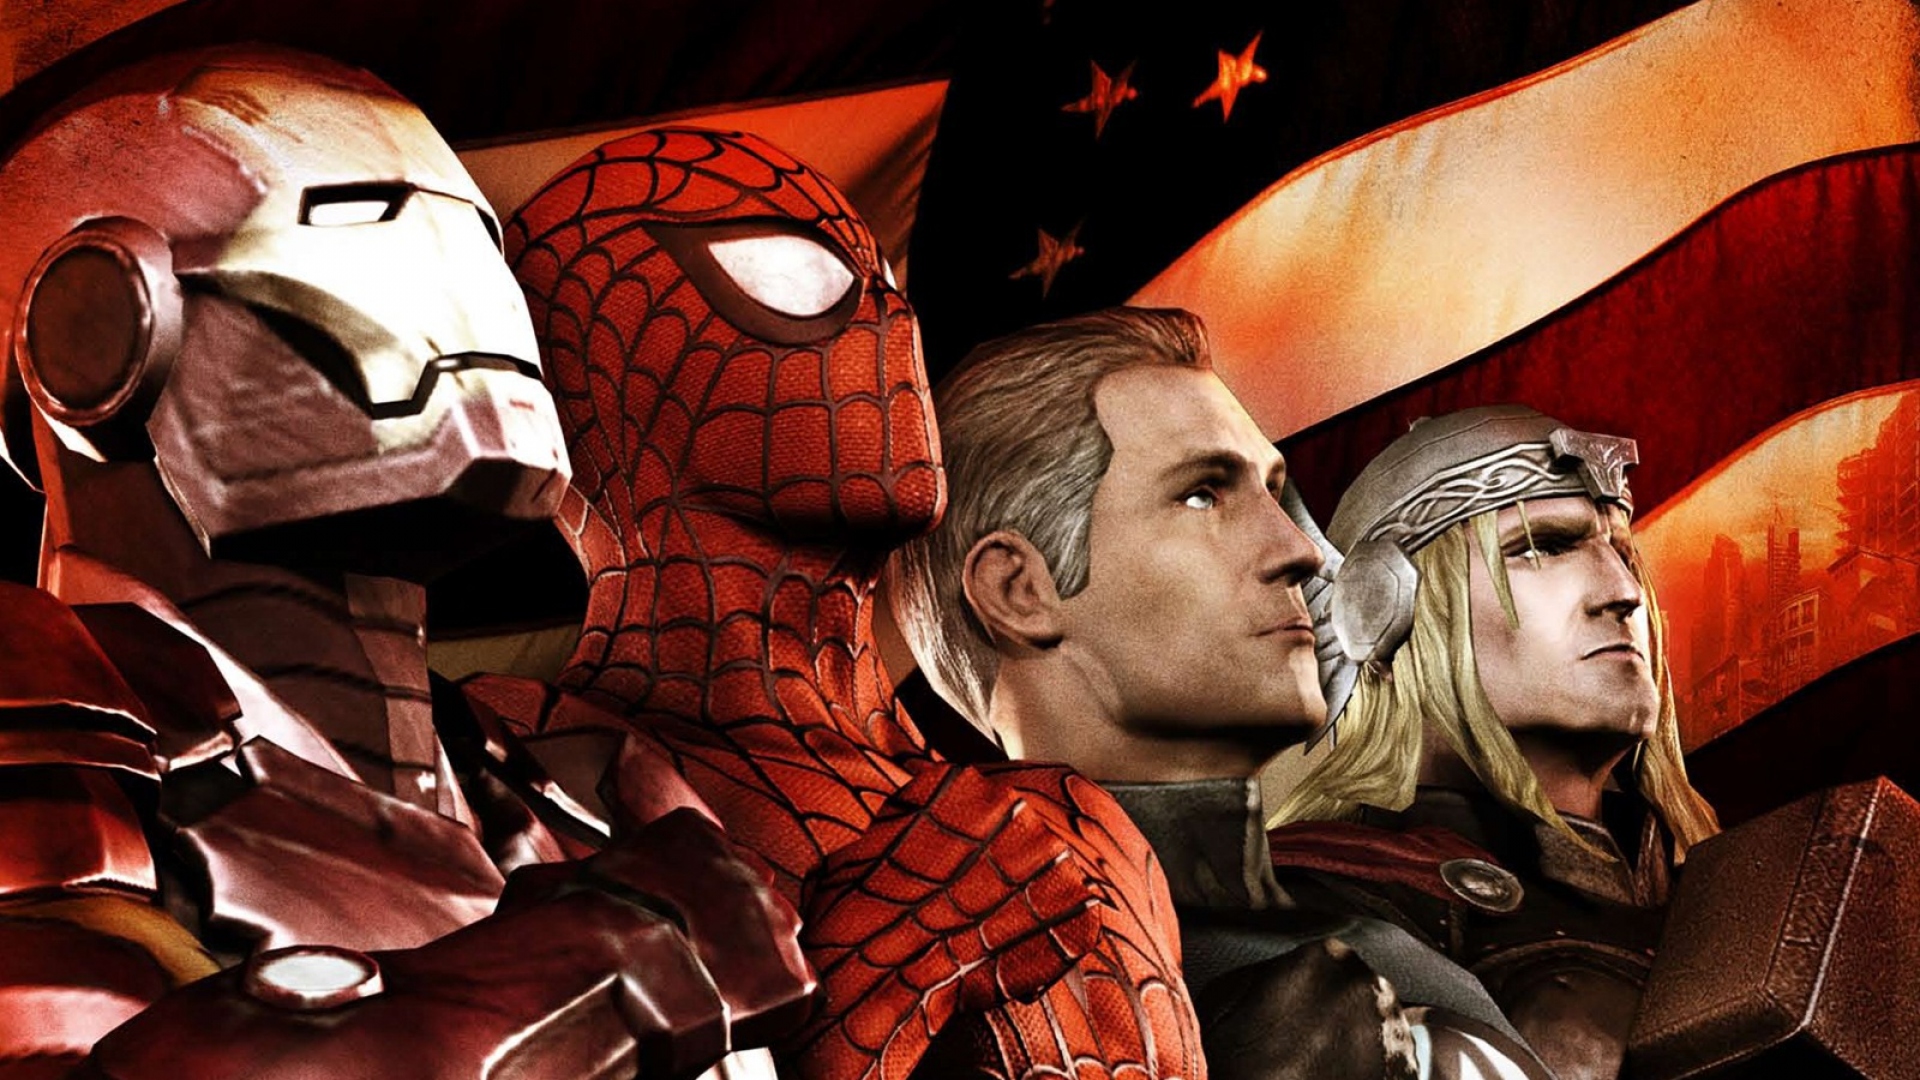 Meilleurs fonds d'écran Marvel: Ultimate Alliance 2 pour l'écran du téléphone